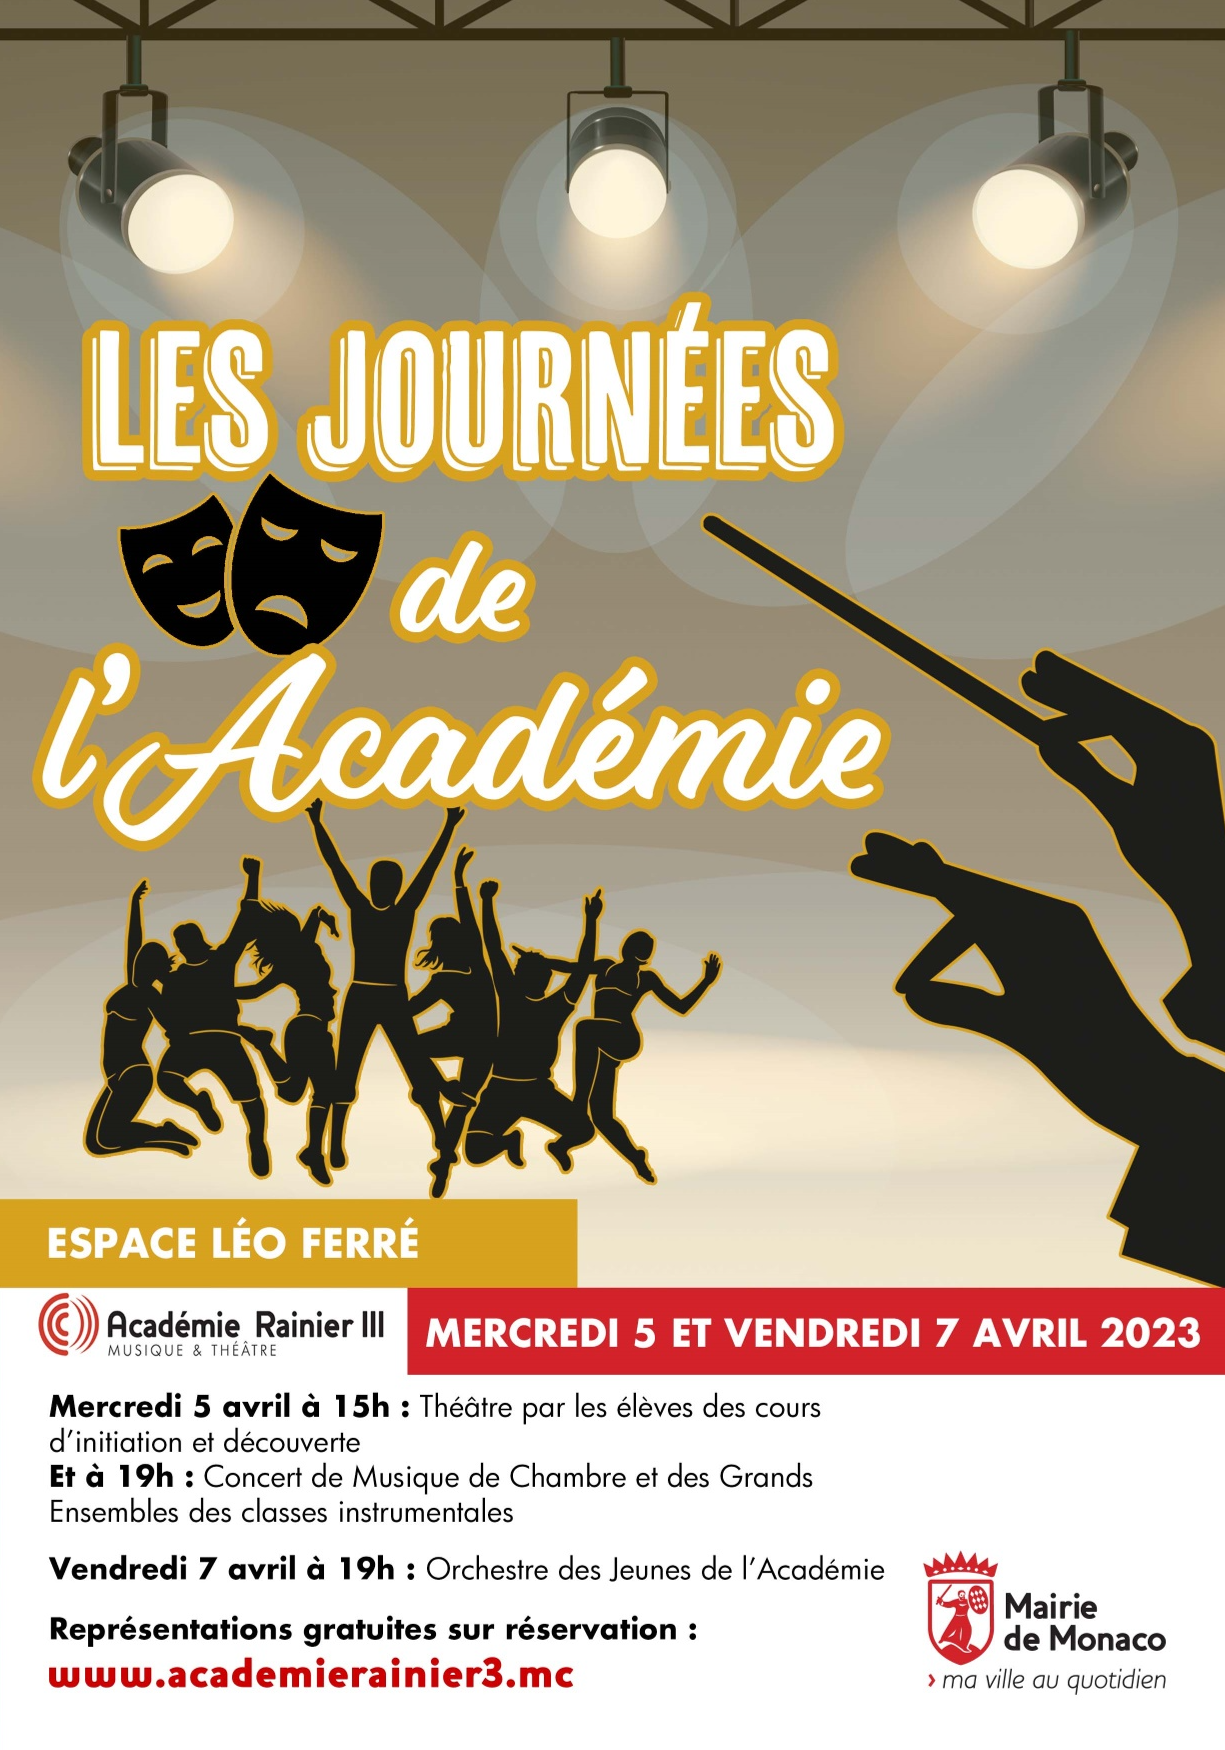 Affiche de l'événement "Les Journées de l'Académie"